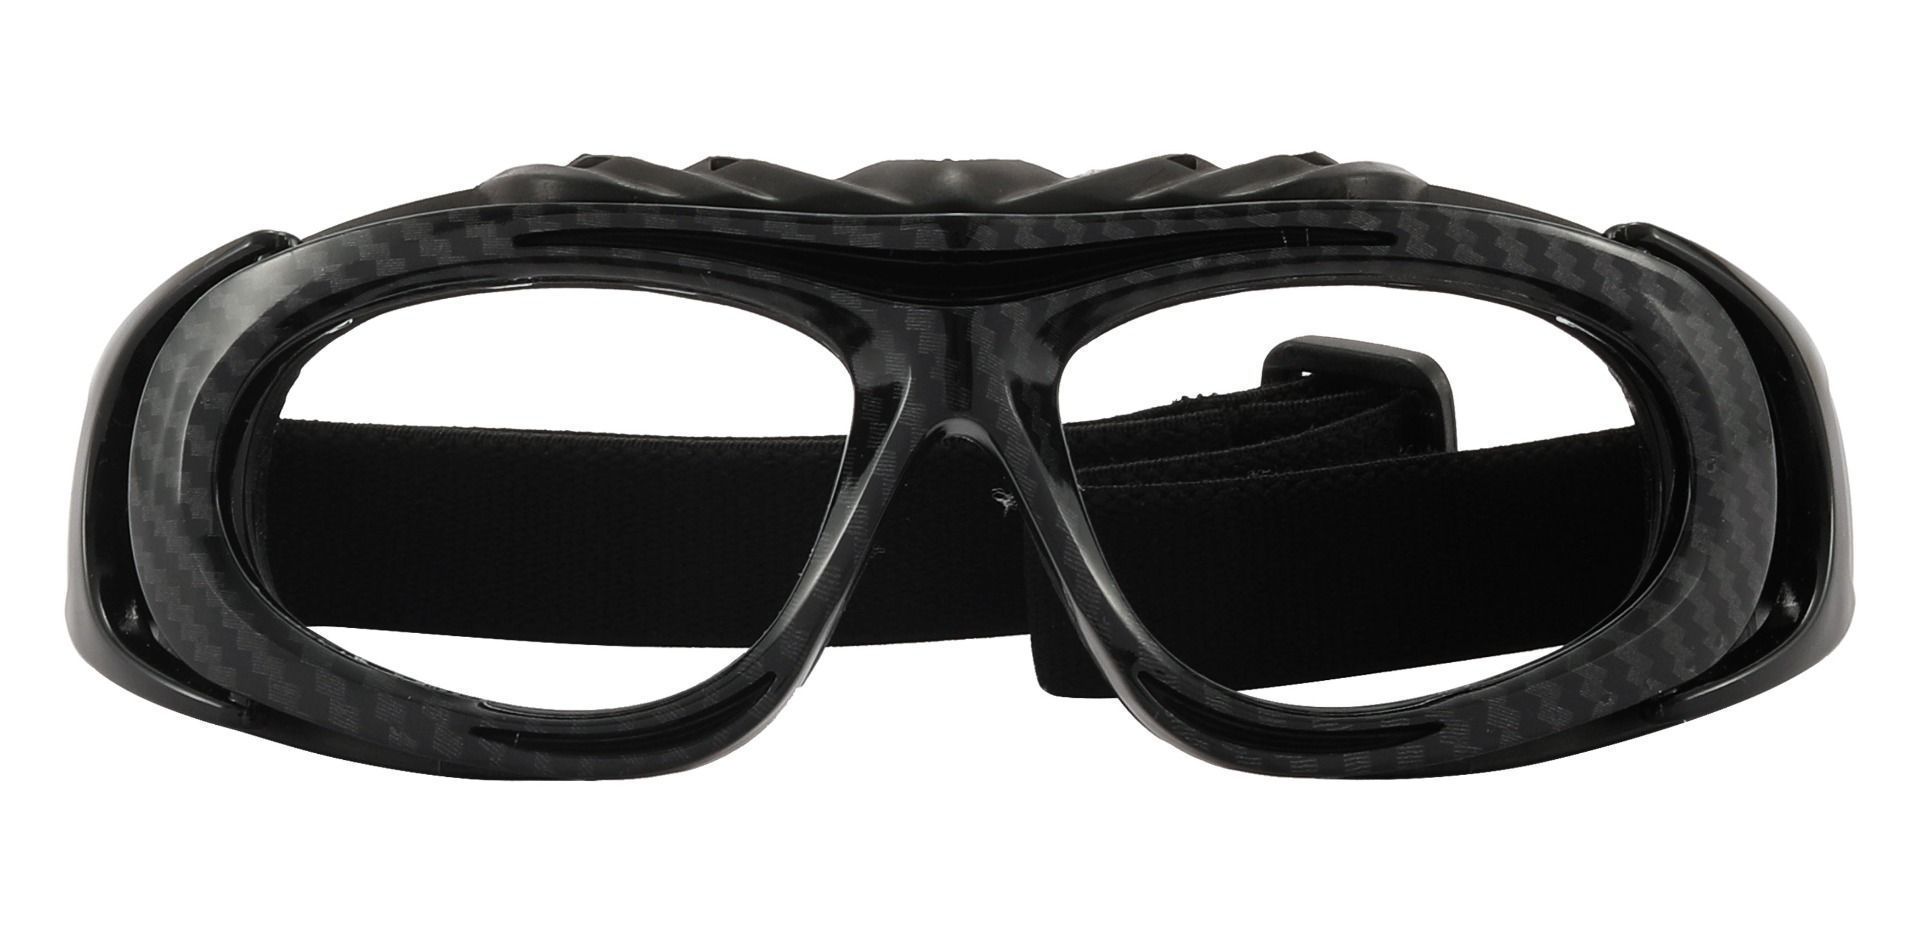 Reston Sports Goggles Prescription Glasses - Black